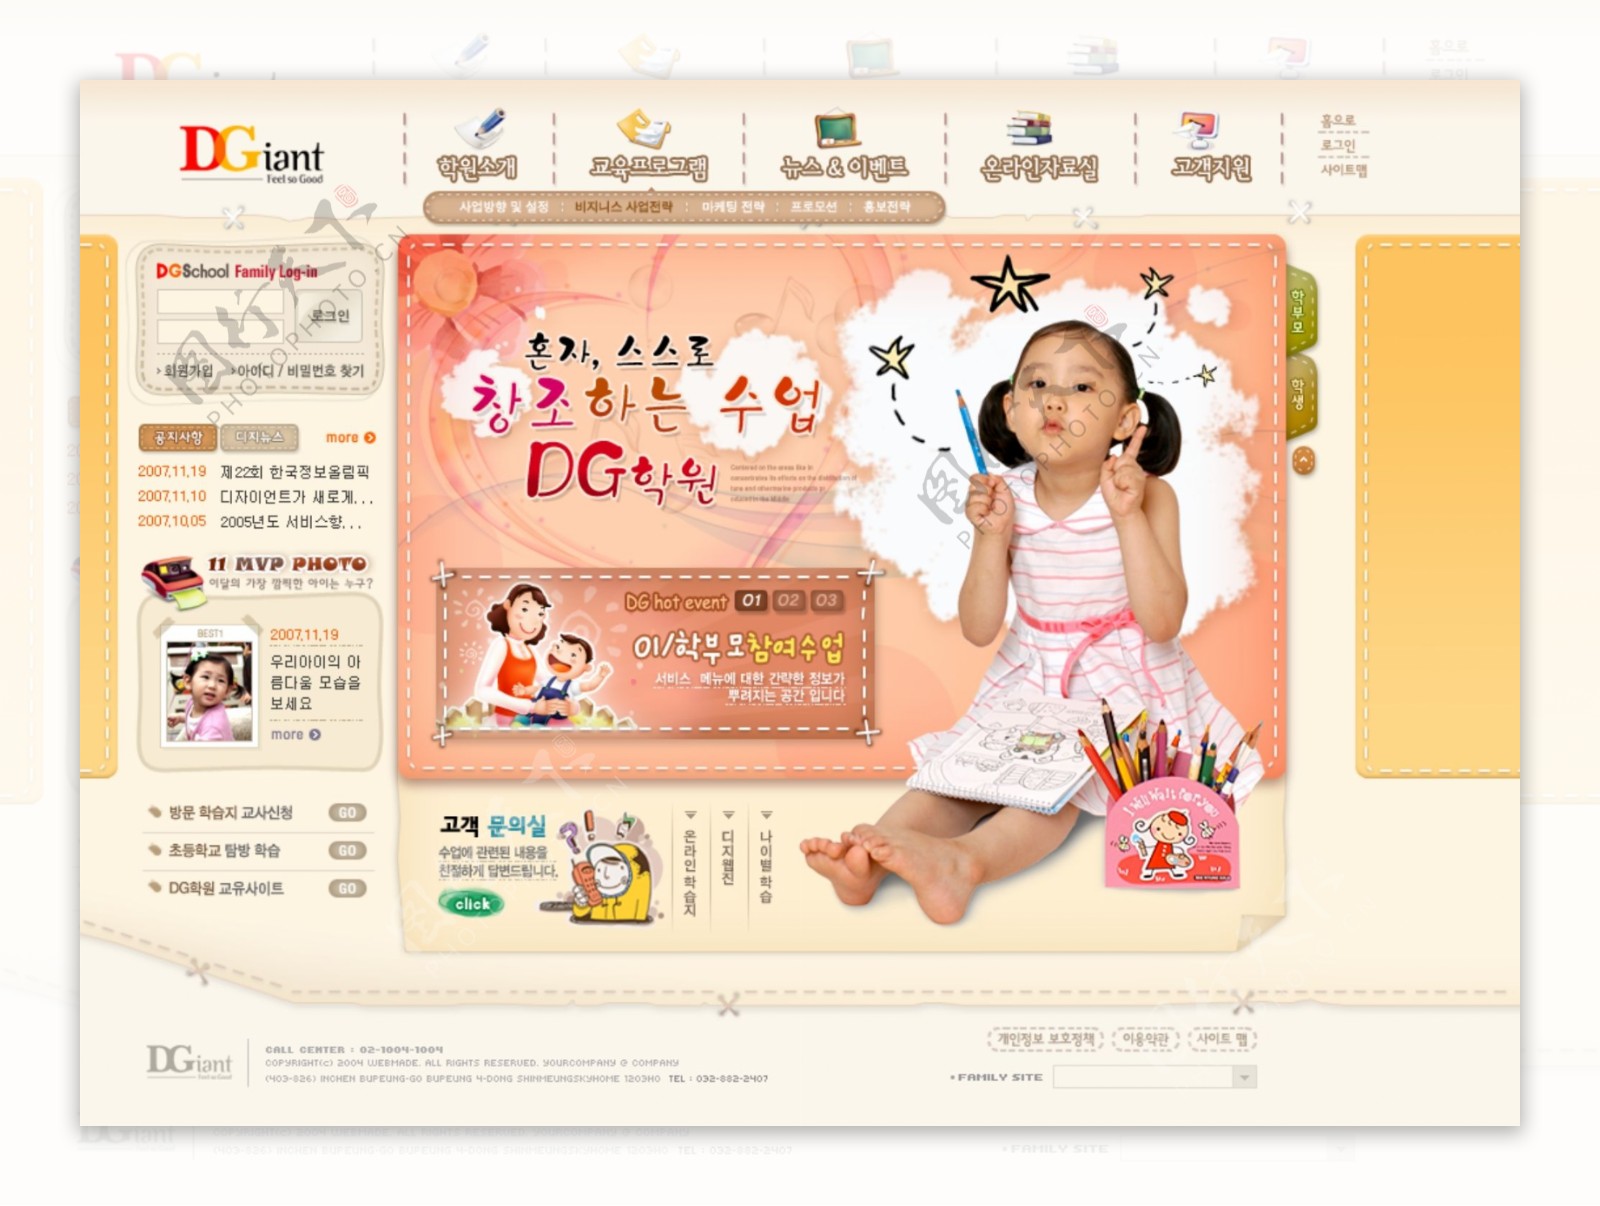 韩国少女教学网页模板图片